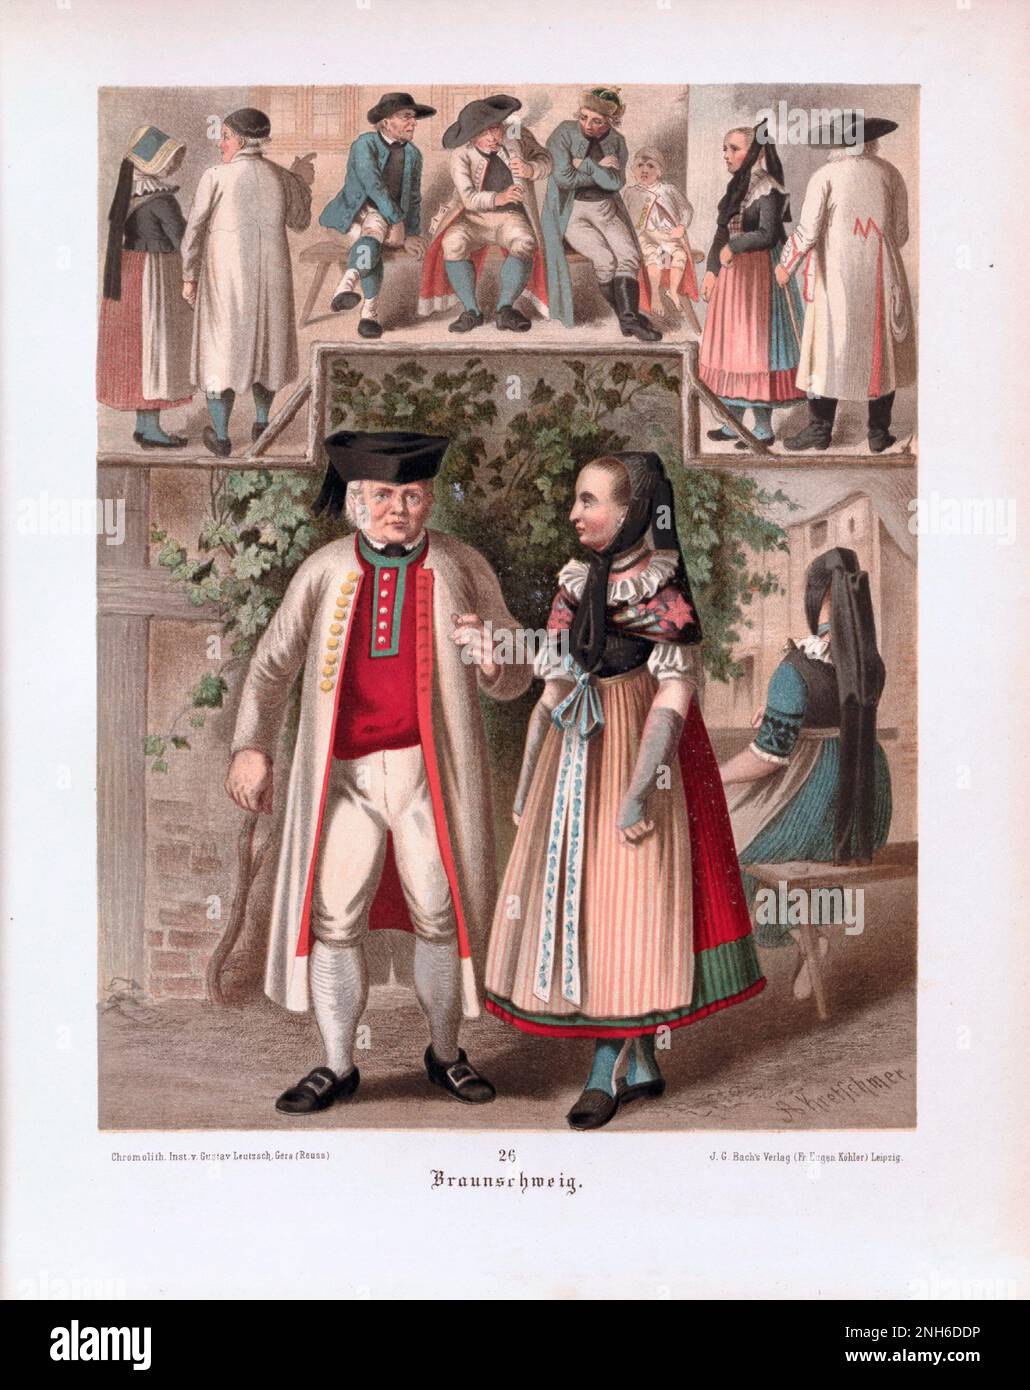 Disfraz folclórico alemán. A cargo de Braunschweig. litografía del siglo 19th. Foto de stock